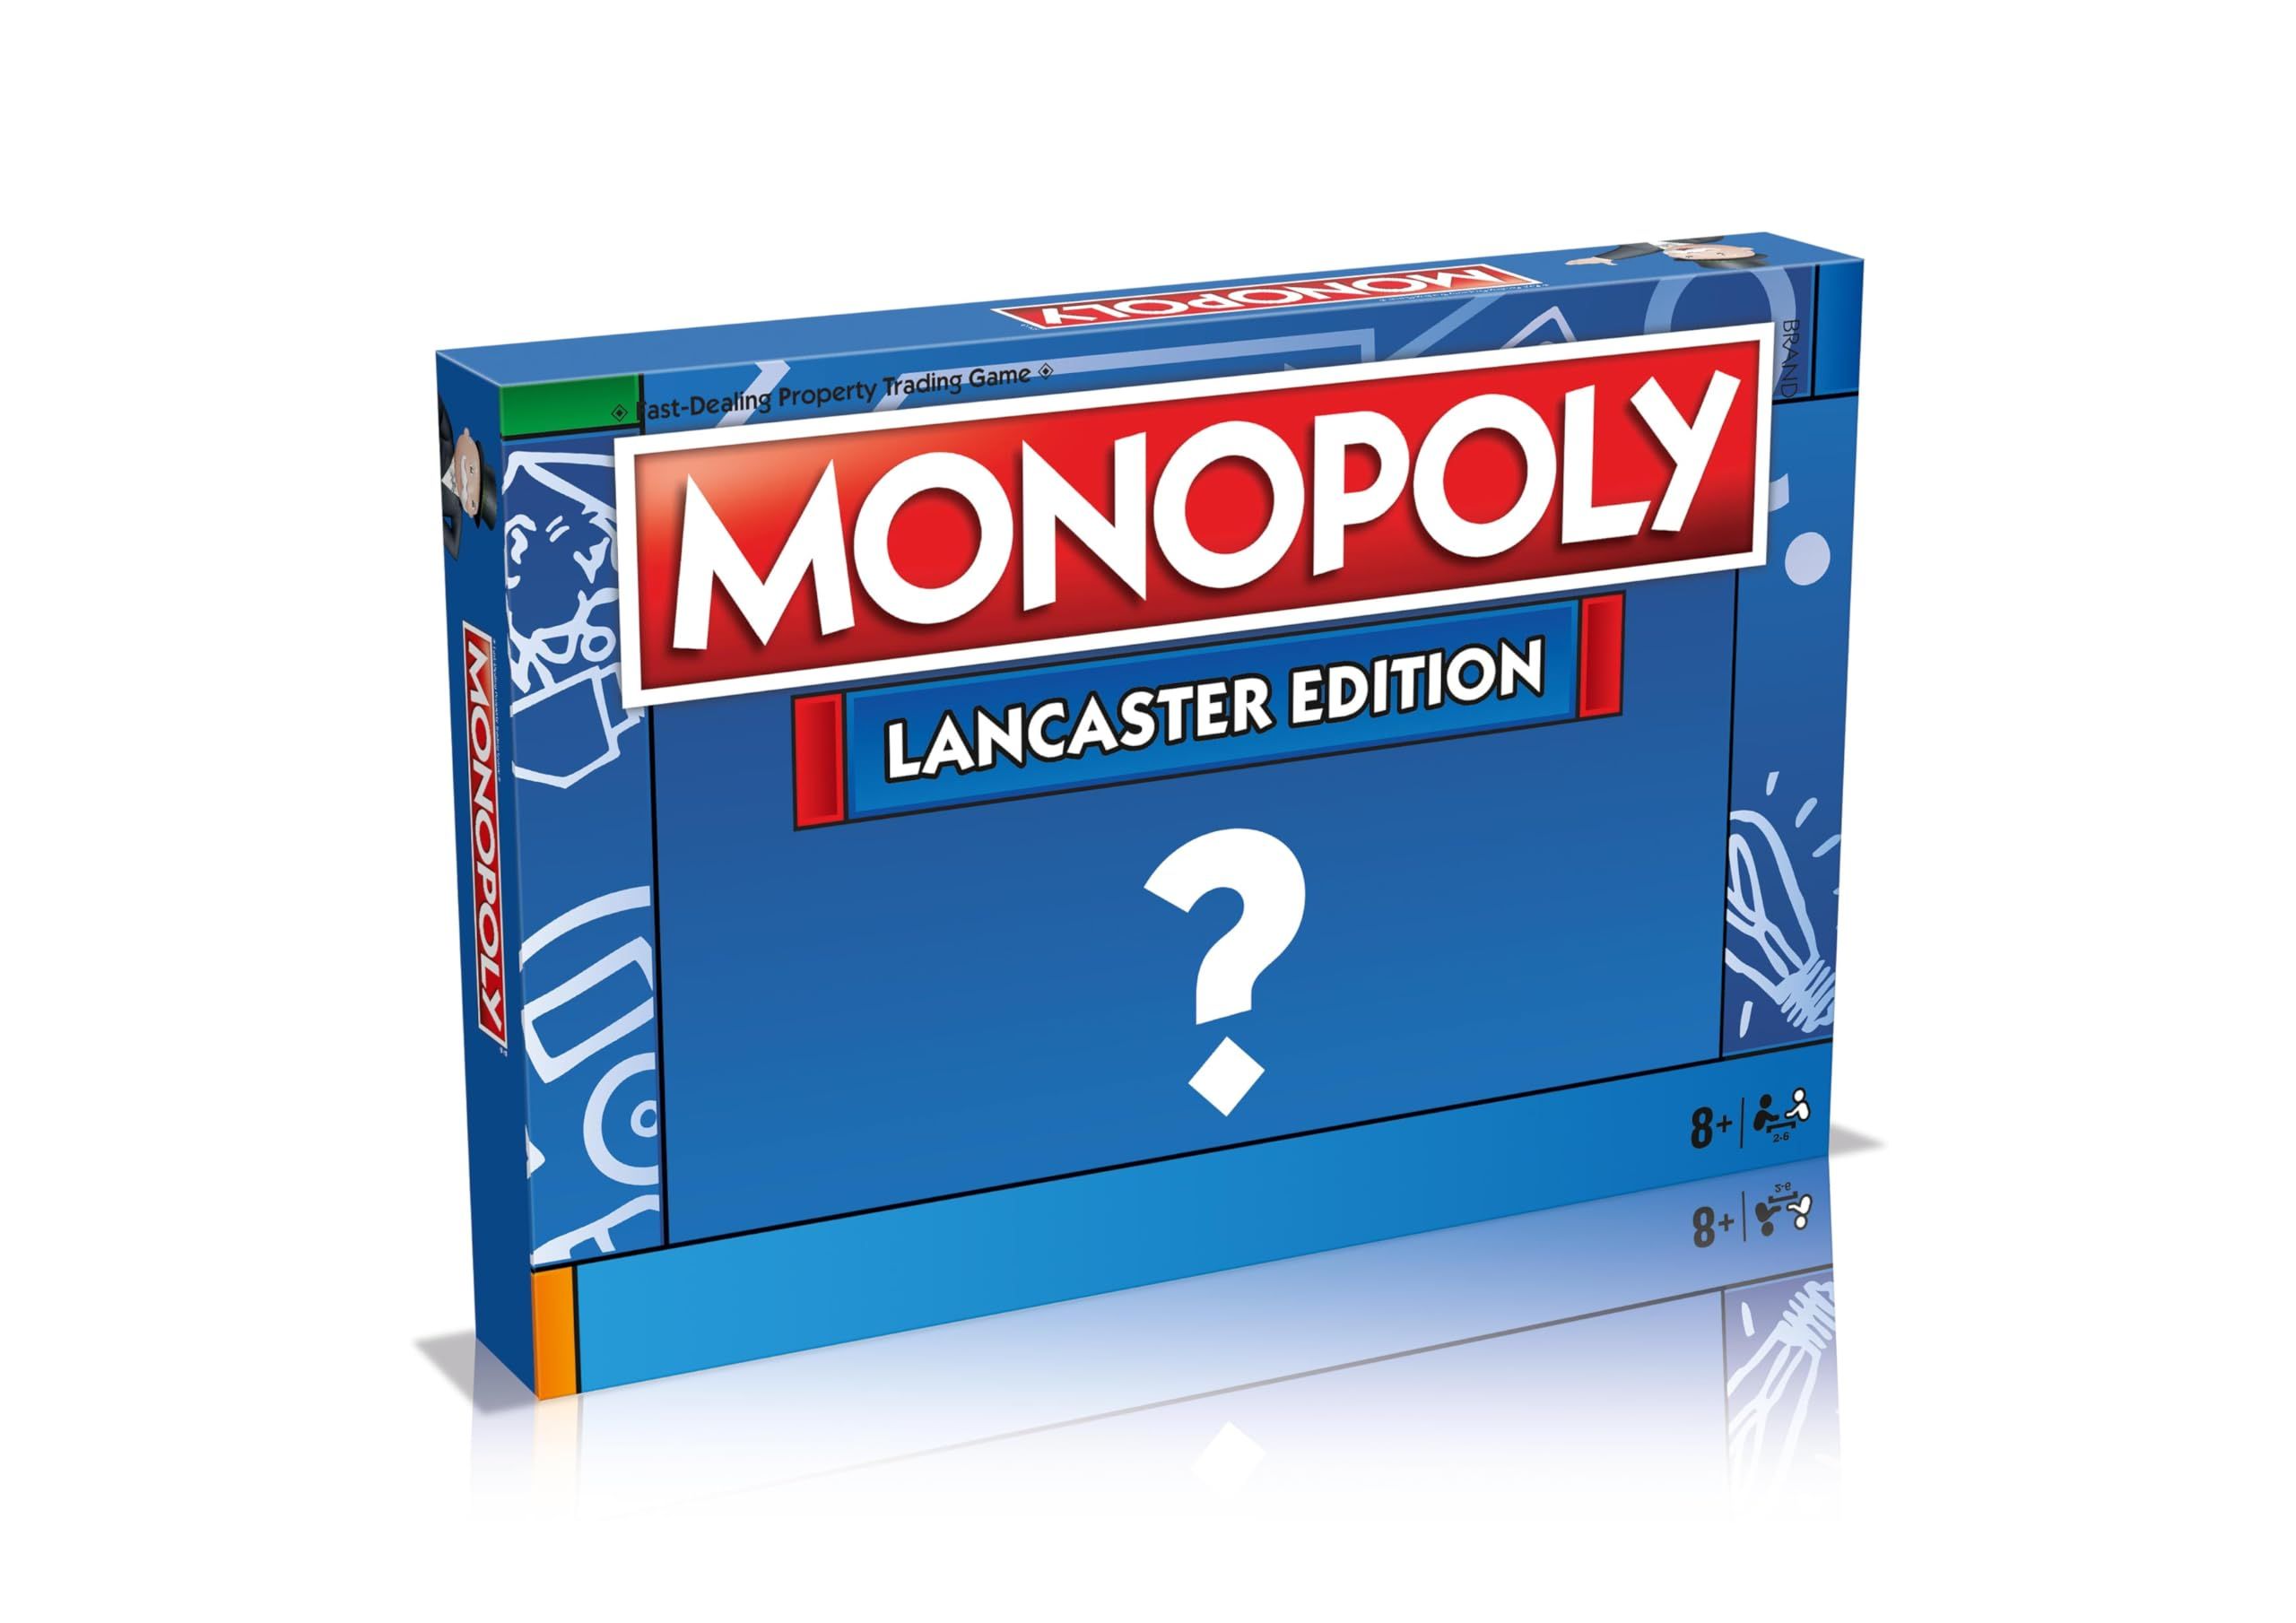 Monopoly Team GB